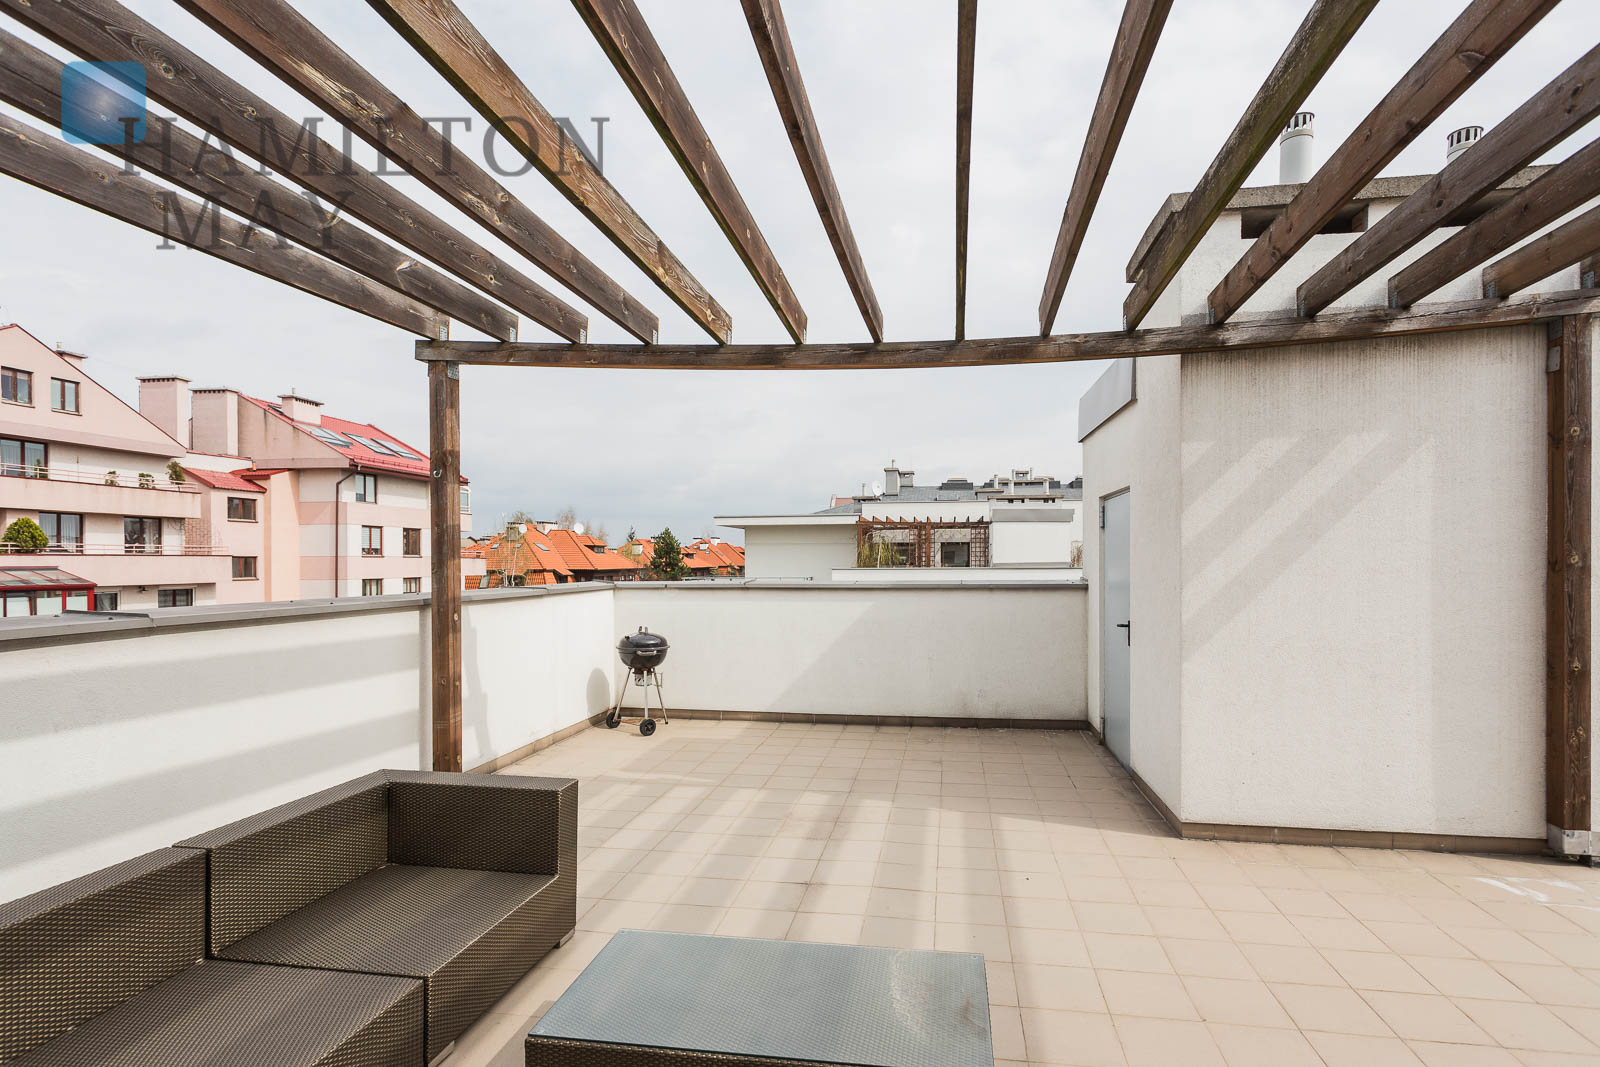 Nowe, przestronne mieszkanie z 82 m2 tarasem i balkonem na kameralnym osiedlu Mistral Warszawa na wynajem